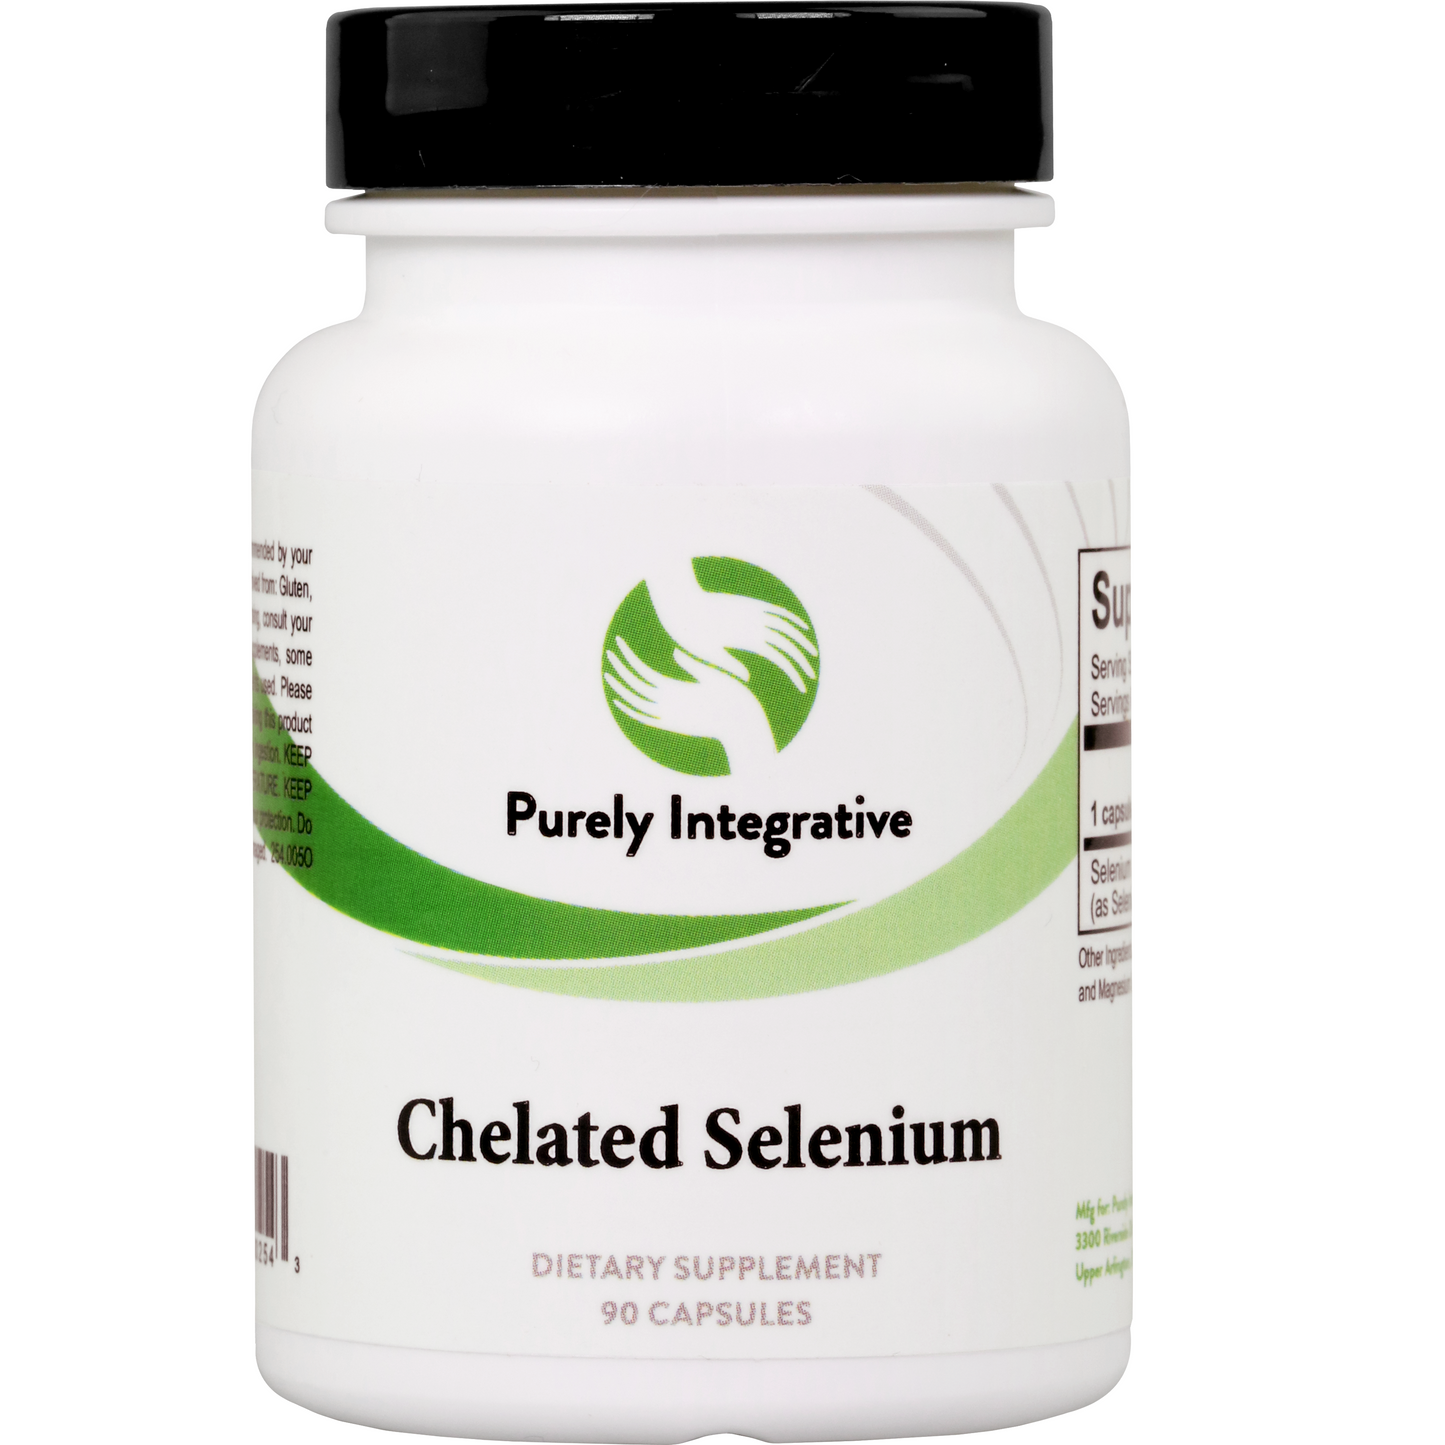 Chelated Selenium